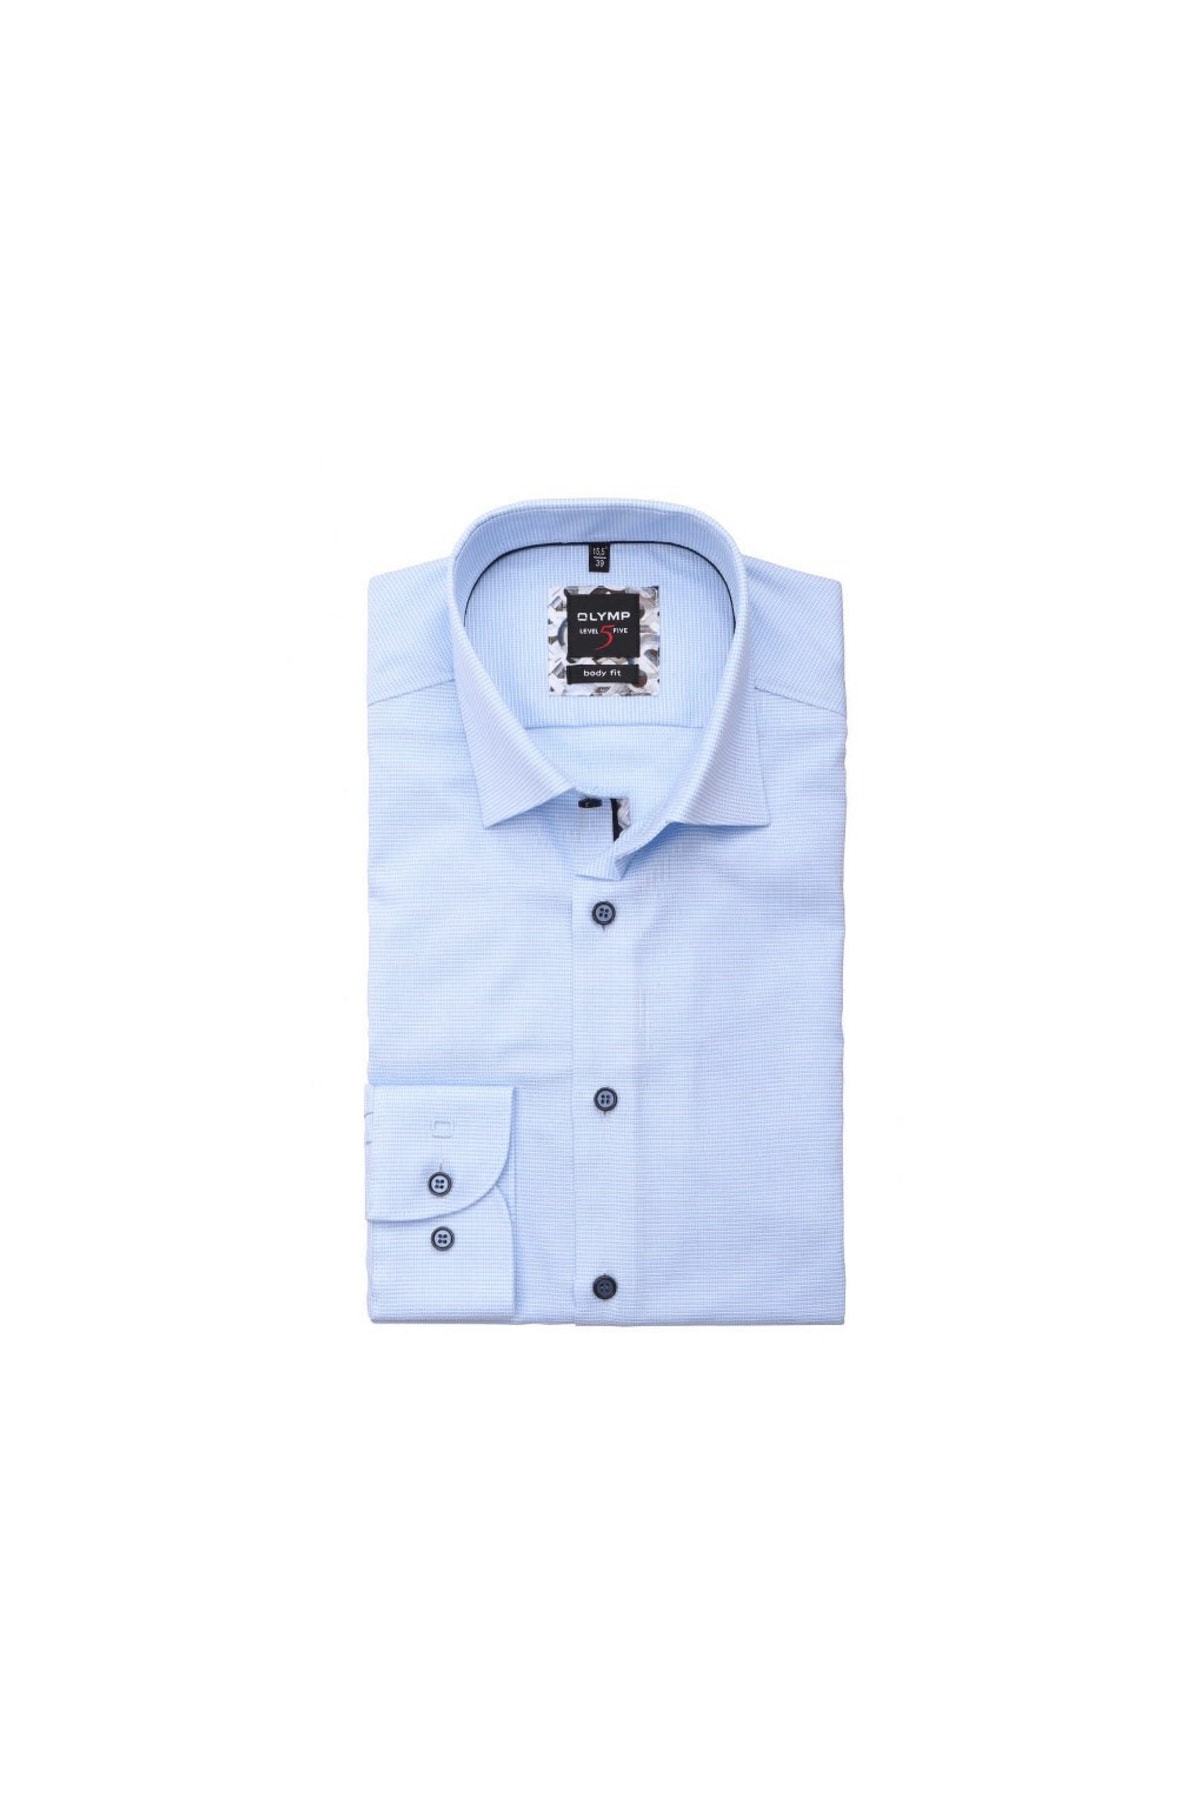 OLYMP Hemd Blau Regular Fit Fast ausverkauft